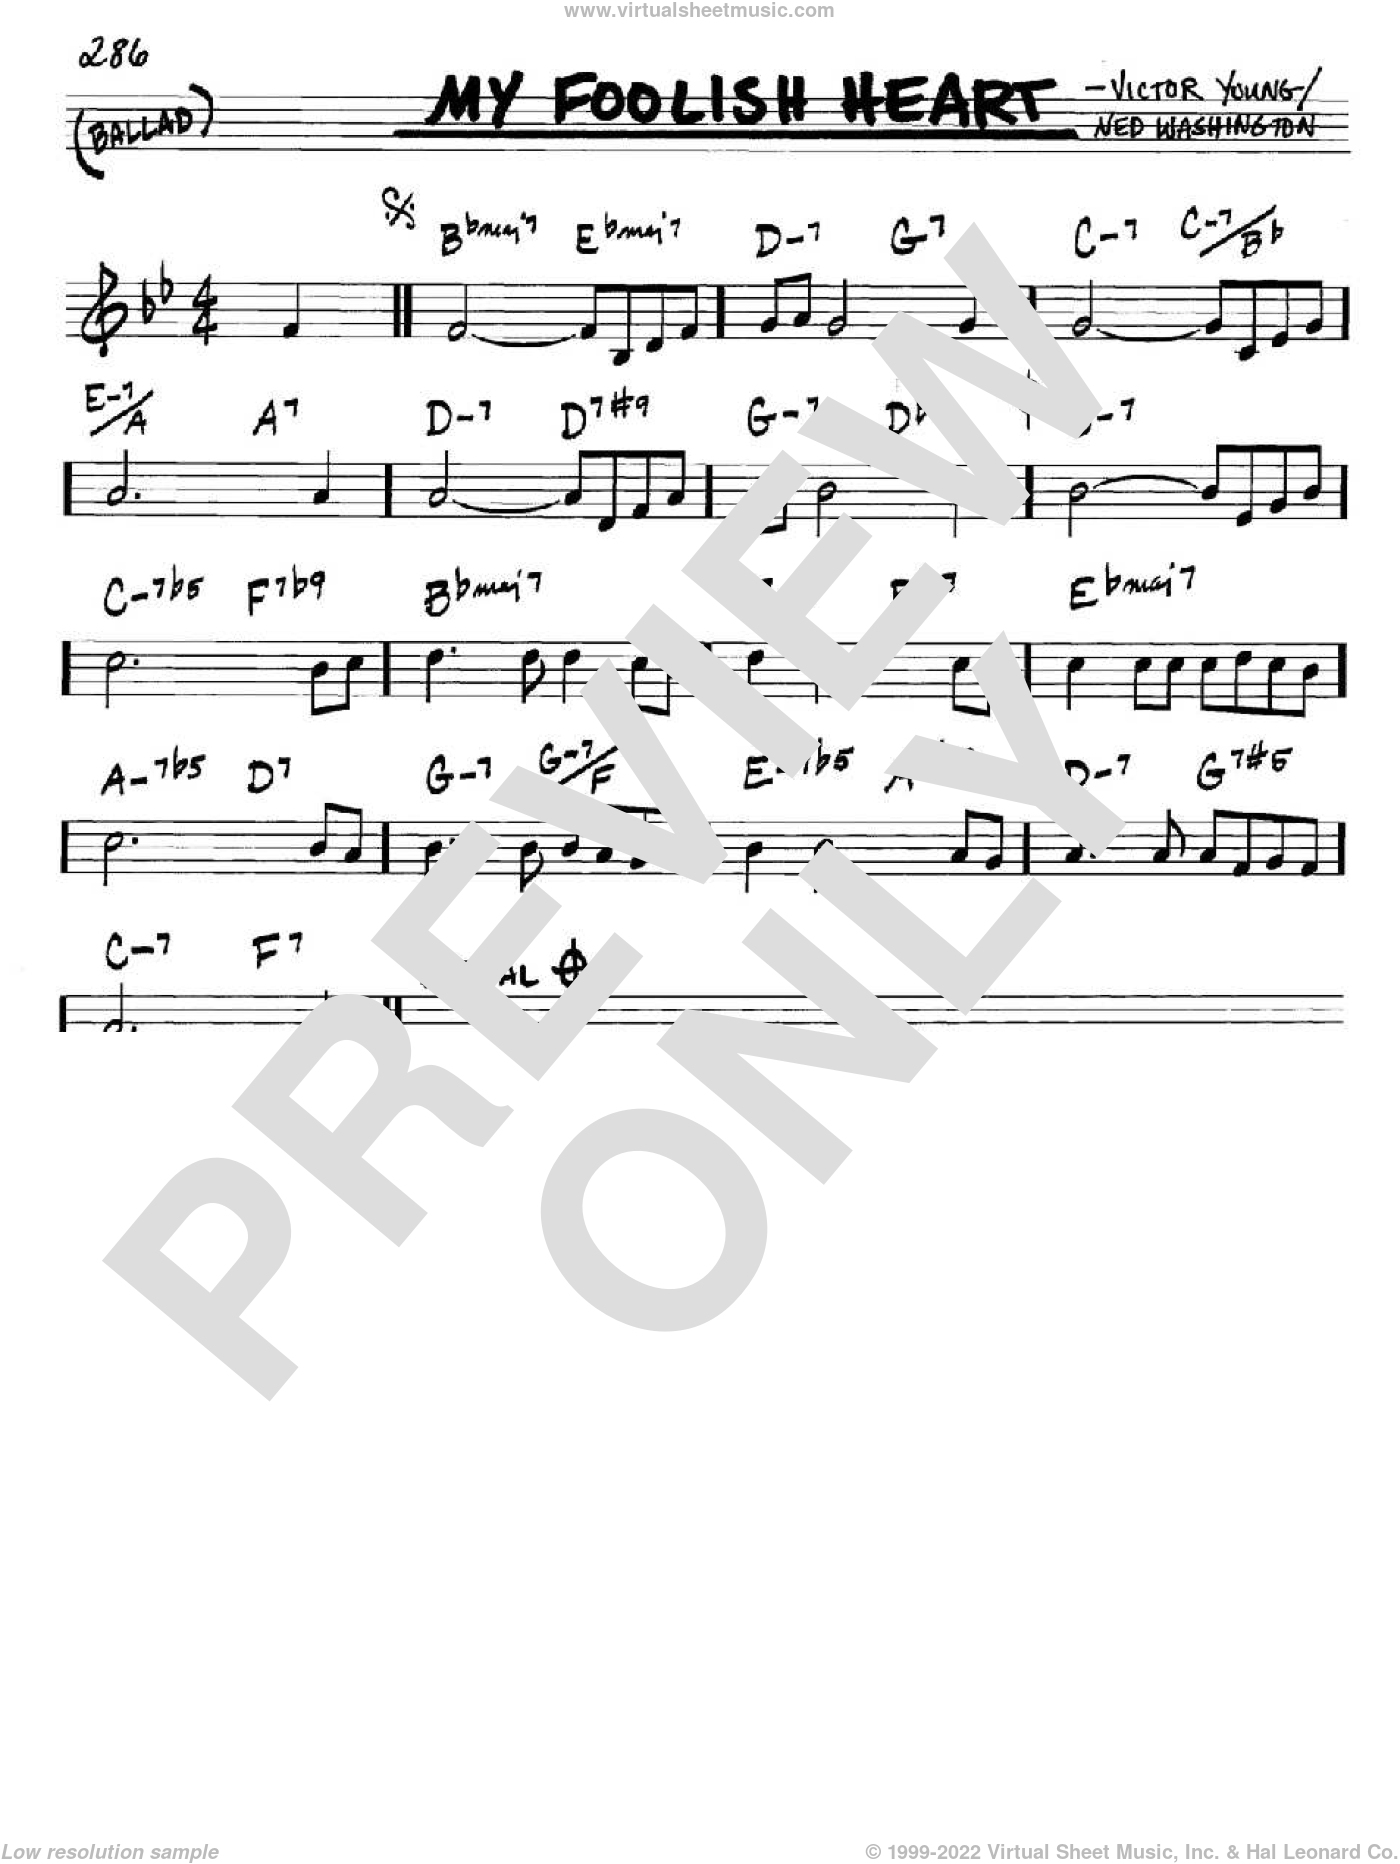 Washington - My Foolish Heart sheet music (in C) [PDF]